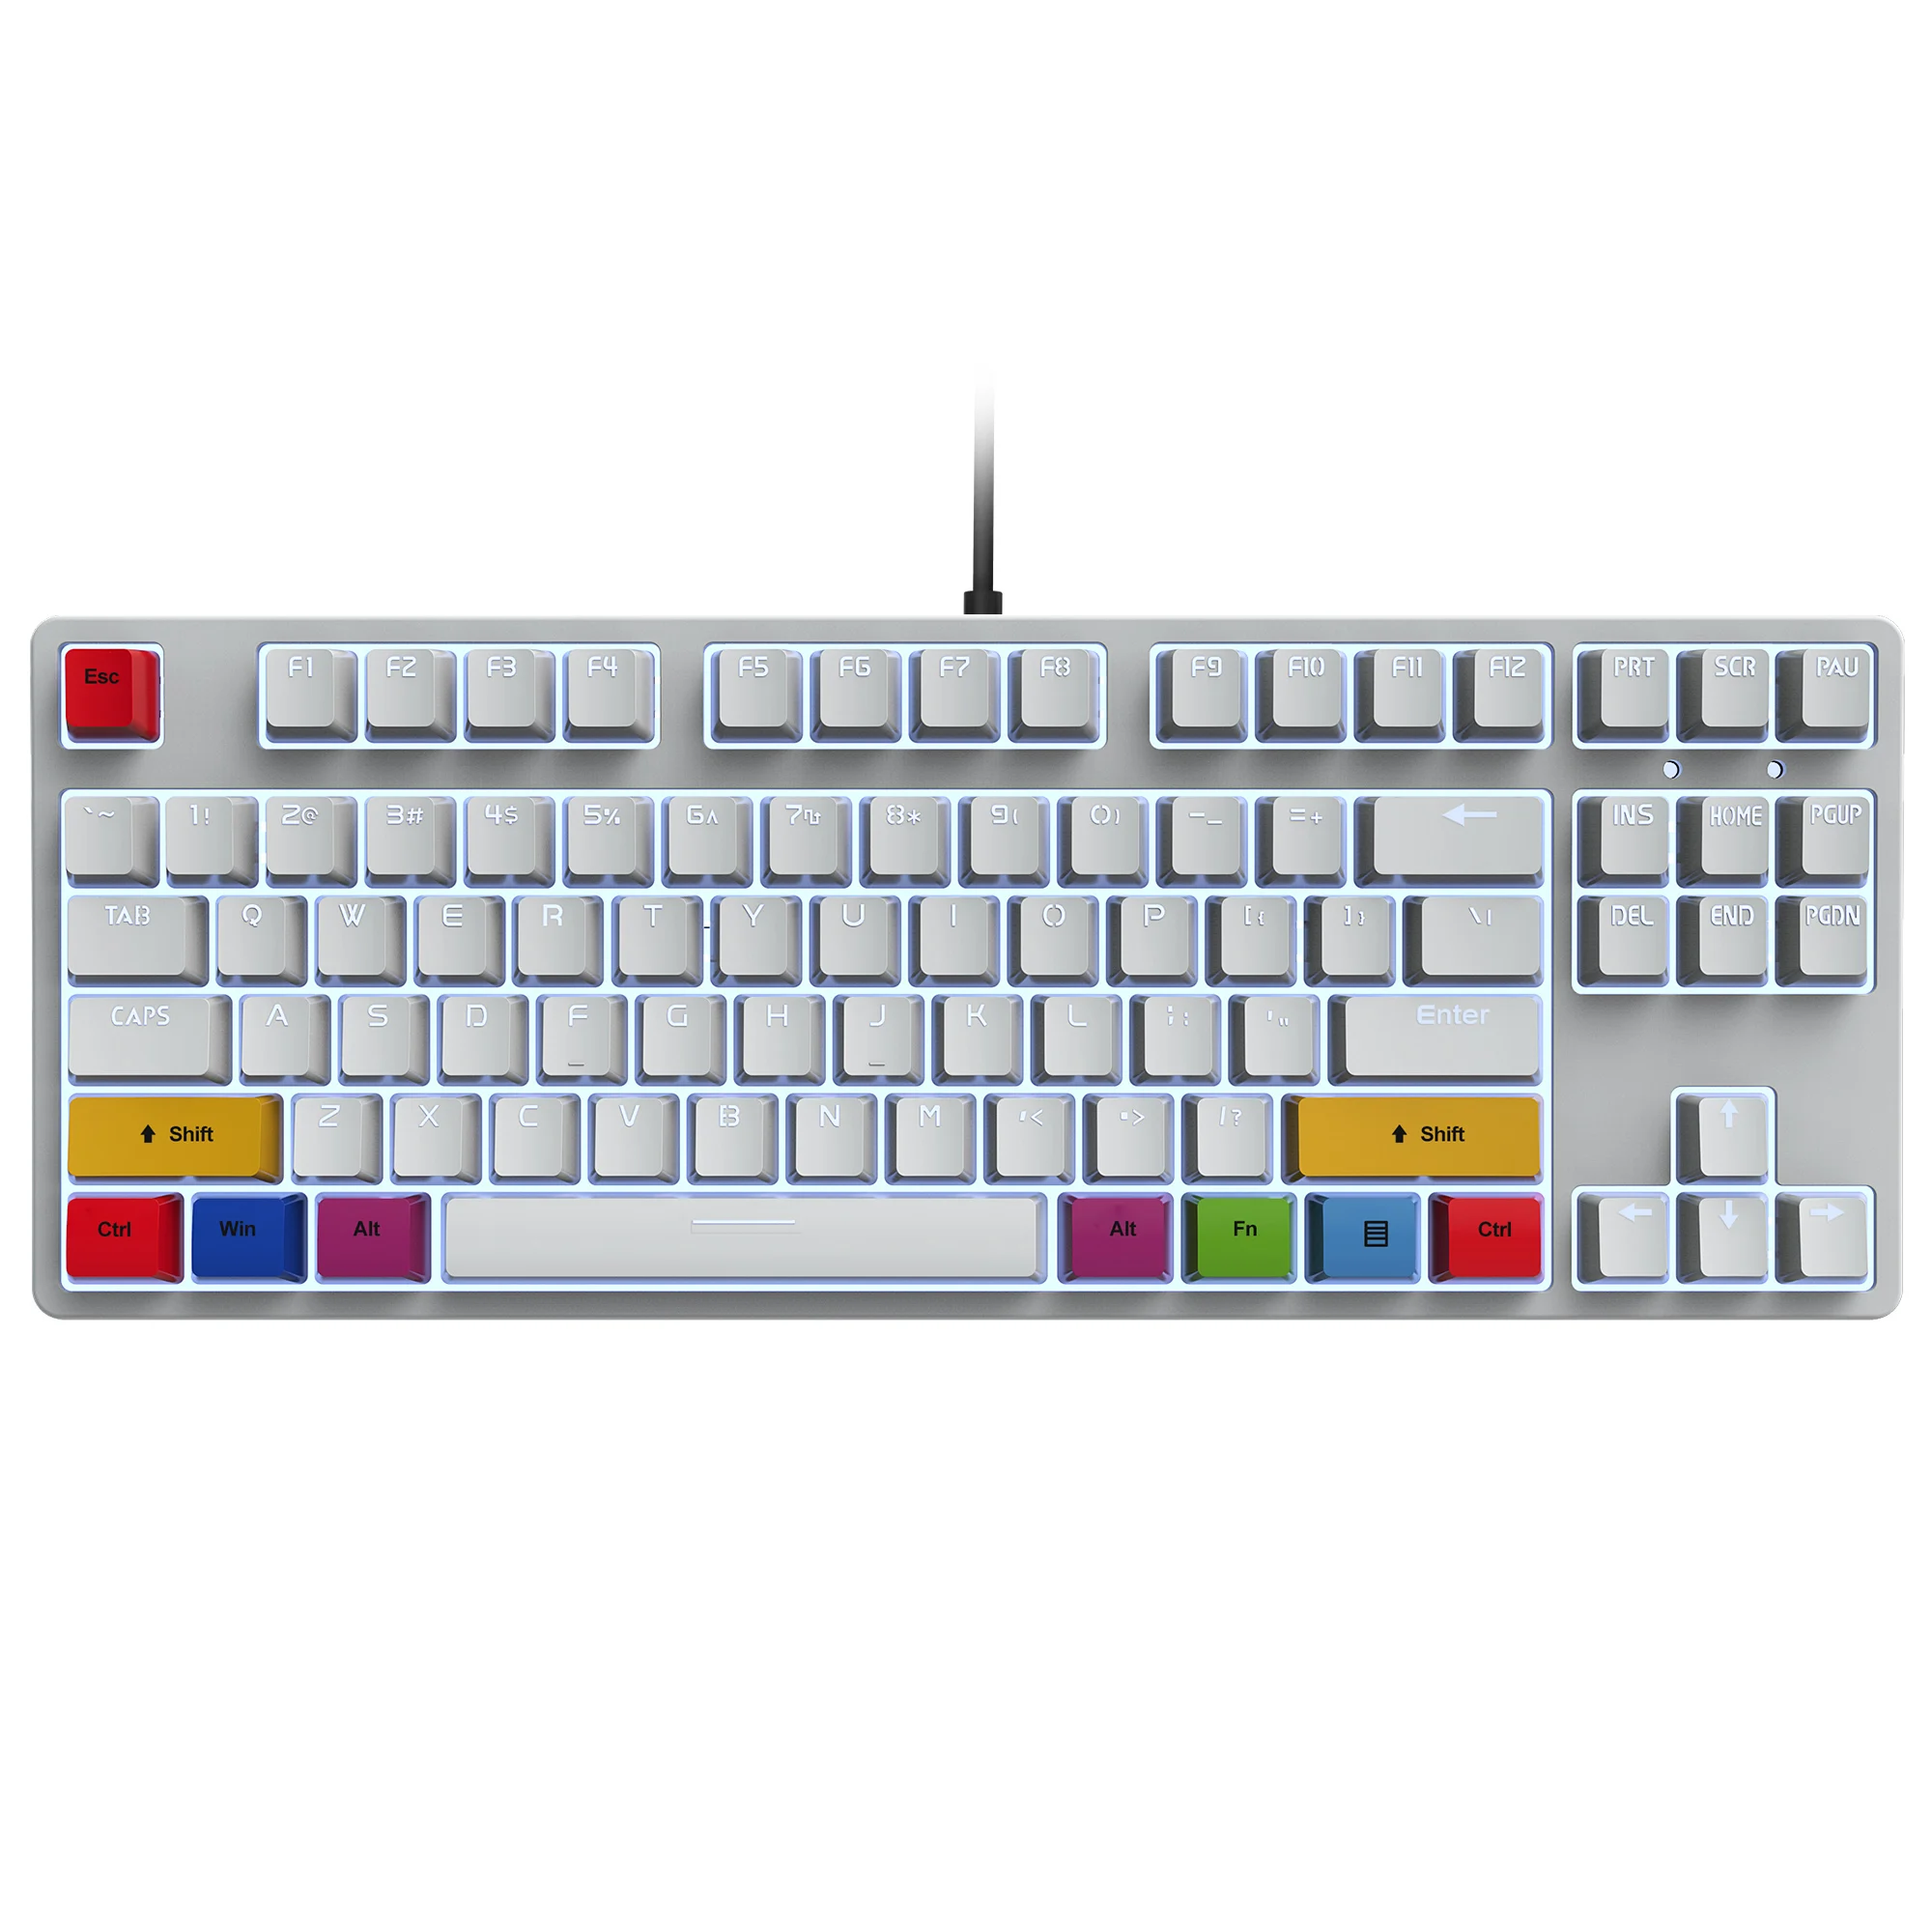 Фото Механическая клавиатура с 87 клавишами красный переключатель RGB подсветка